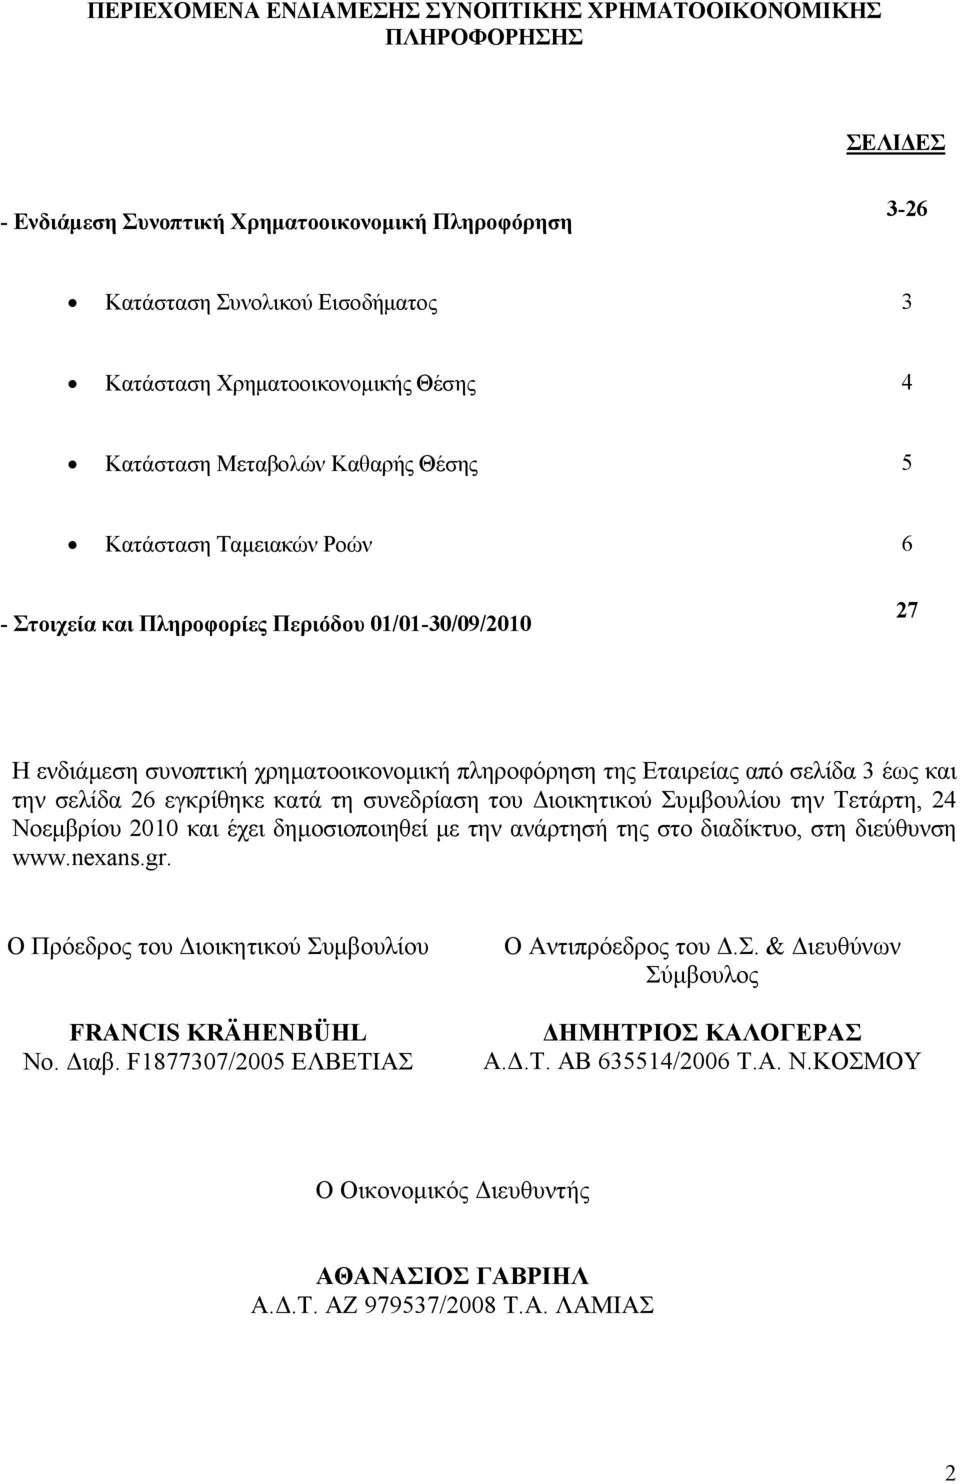 έως και την σελίδα 26 εγκρίθηκε κατά τη συνεδρίαση του Διοικητικού Συμβουλίου την Τετάρτη, 24 Νοεμβρίου 2010 και έχει δημοσιοποιηθεί με την ανάρτησή της στο διαδίκτυο, στη διεύθυνση www.nexans.gr.